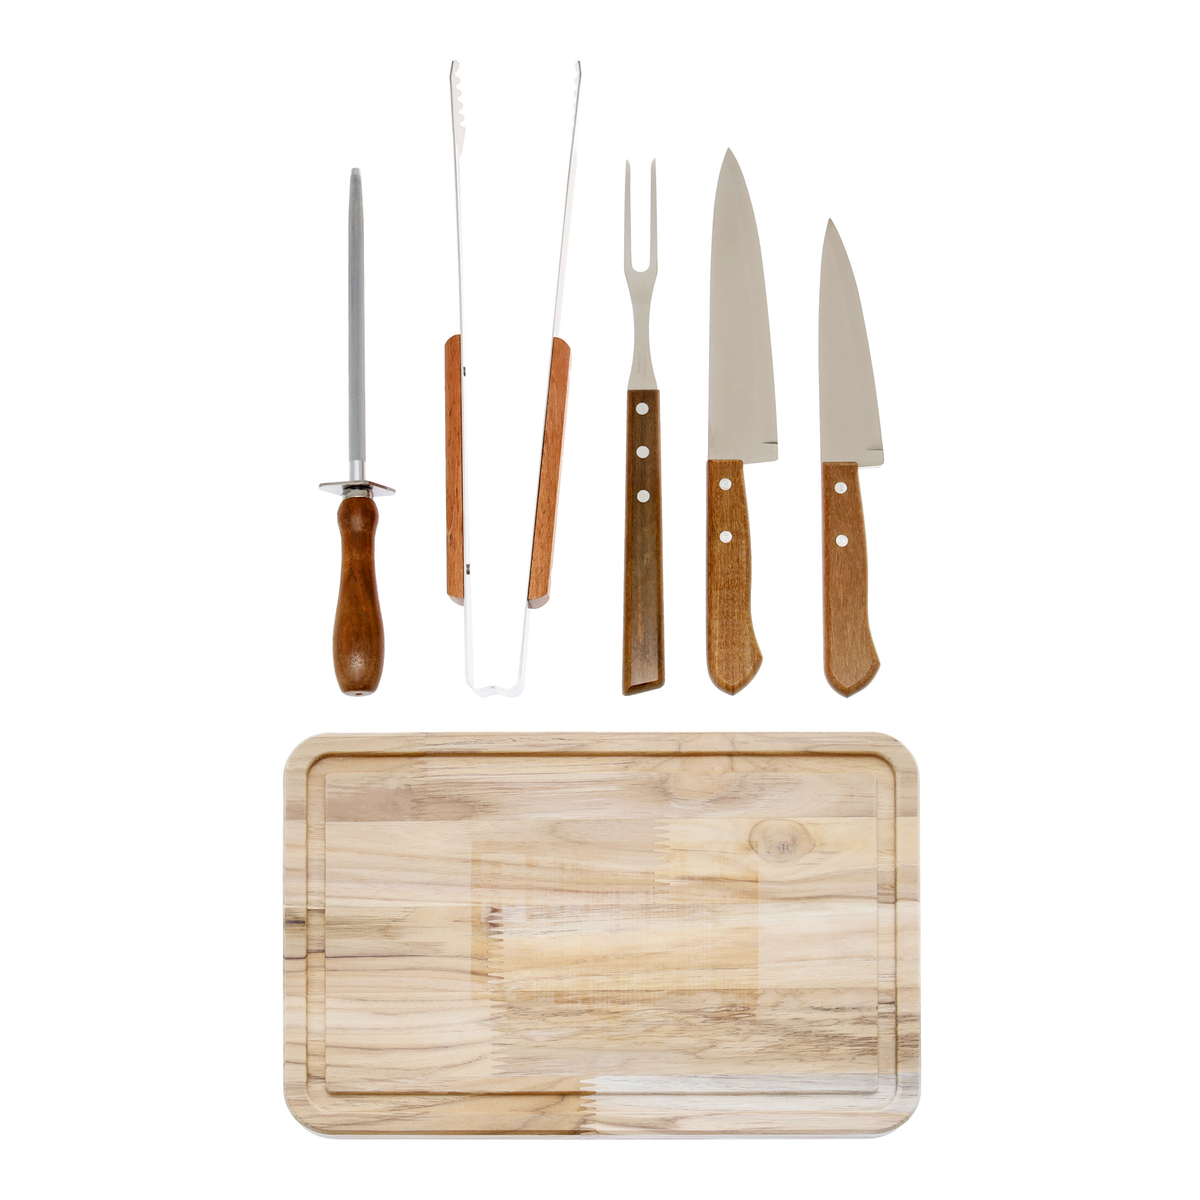 Cuchillos y utensilios – Chilc Home